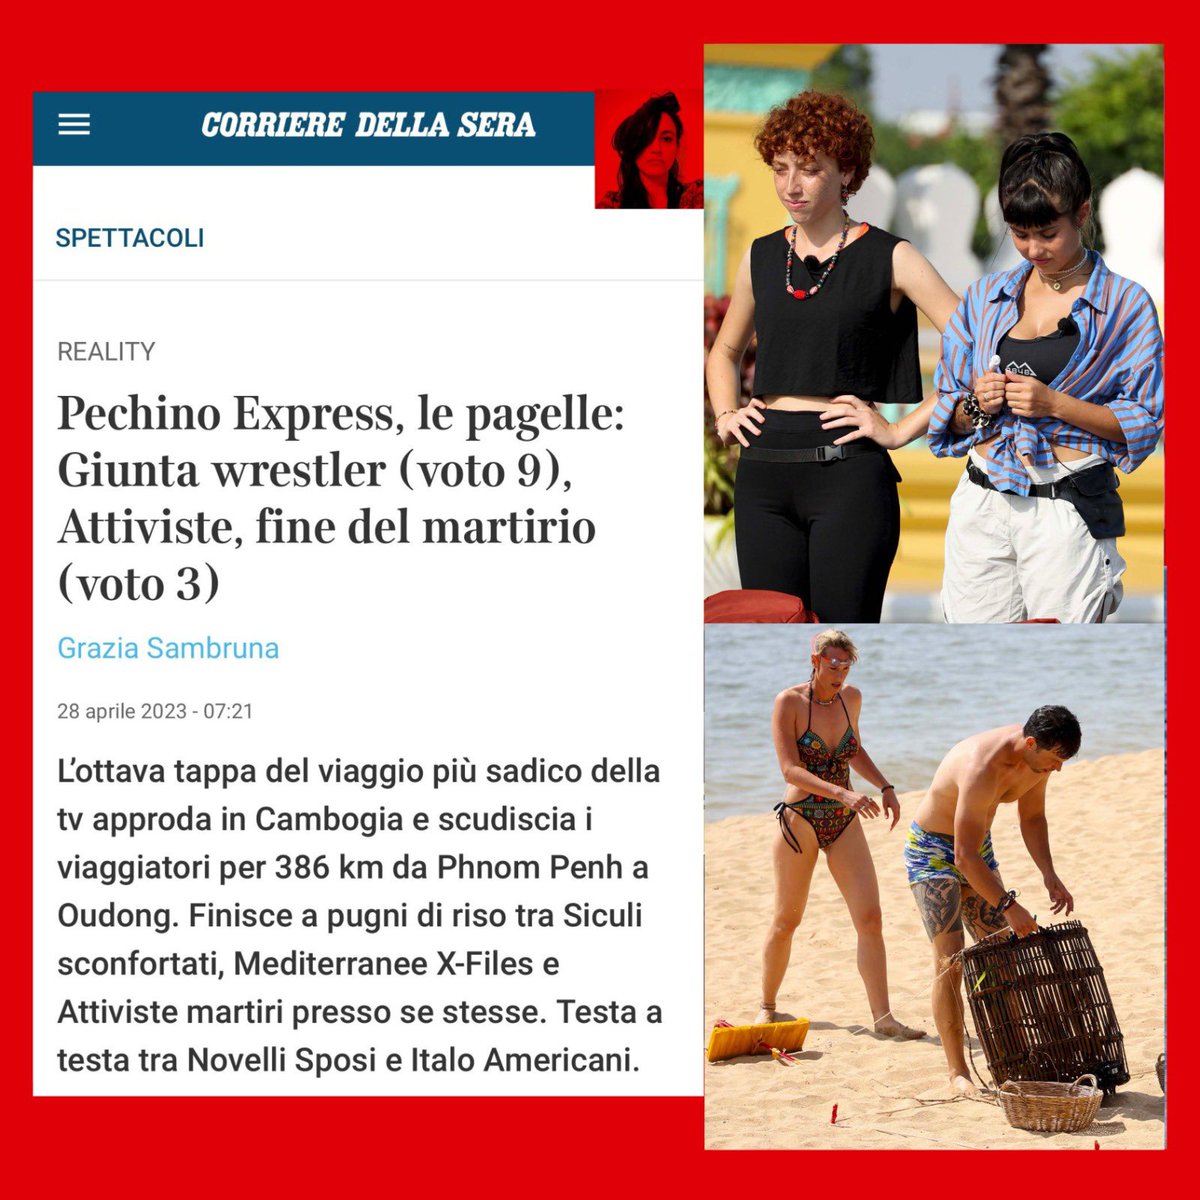 Intanto su Instagram #FedericaPellegrini dà l’idea di aver letto le mie pagelle di #PechinoExpress sul Corriere. 

E questa è una soddisfazione ♥️✨